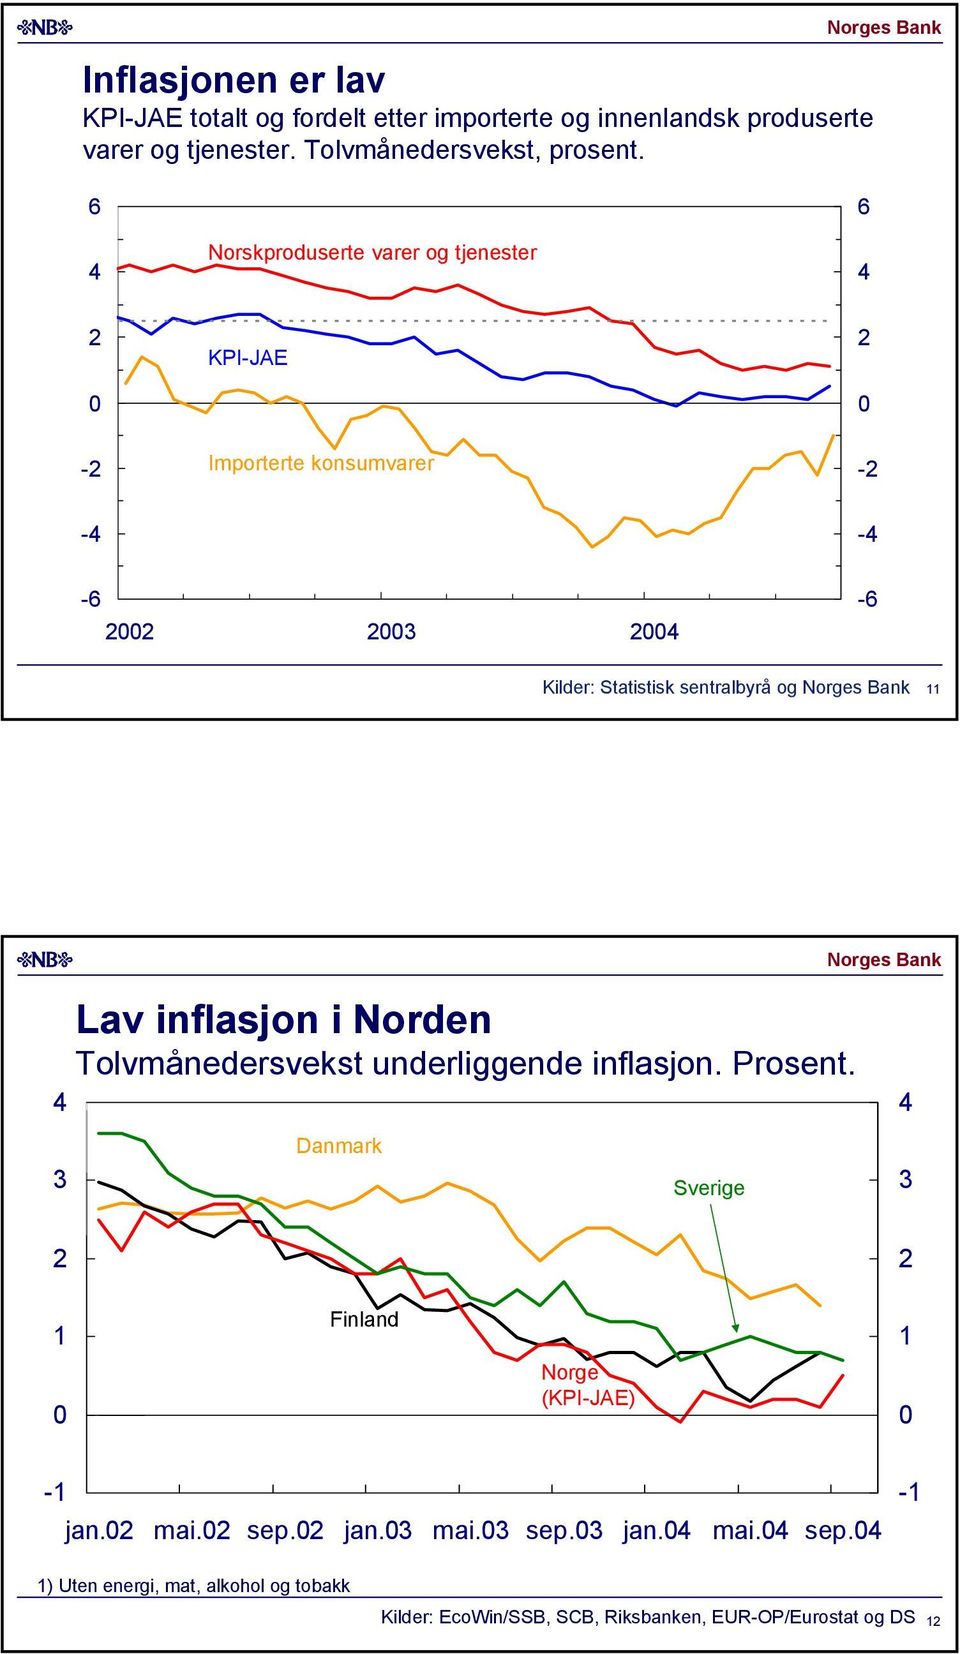 Norskproduserte varer og tjenester KPI-JAE - Importerte konsumvarer - - - - - Kilder: Statistisk sentralbyrå og Lav inflasjon